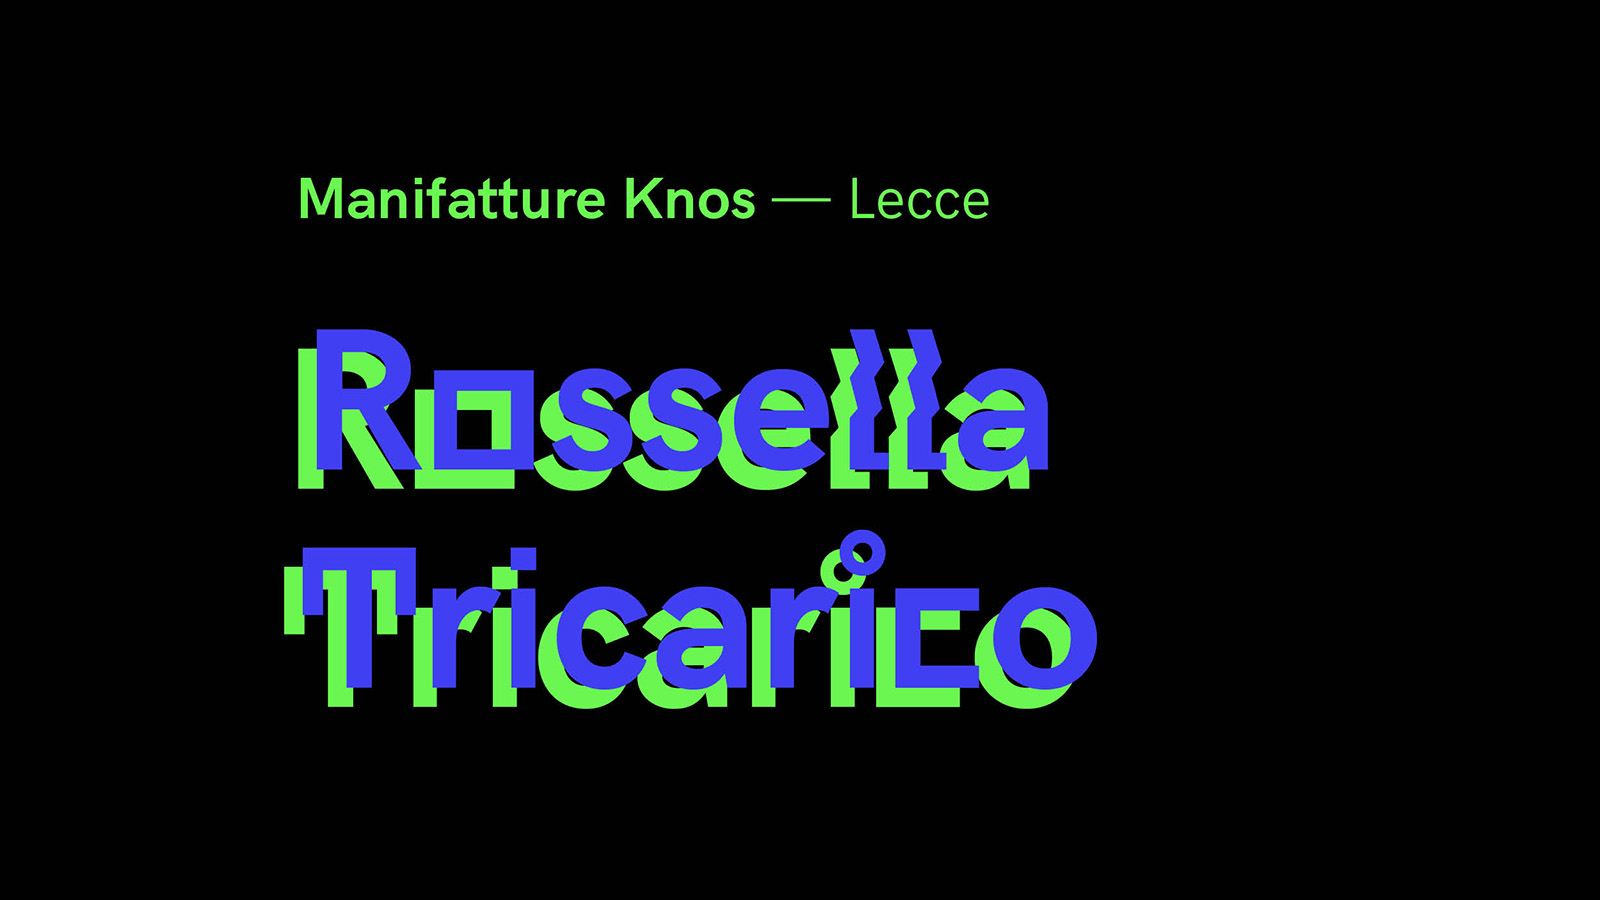 Intervista a Rossella Tricarico — Manifatture Knos (Lecce)